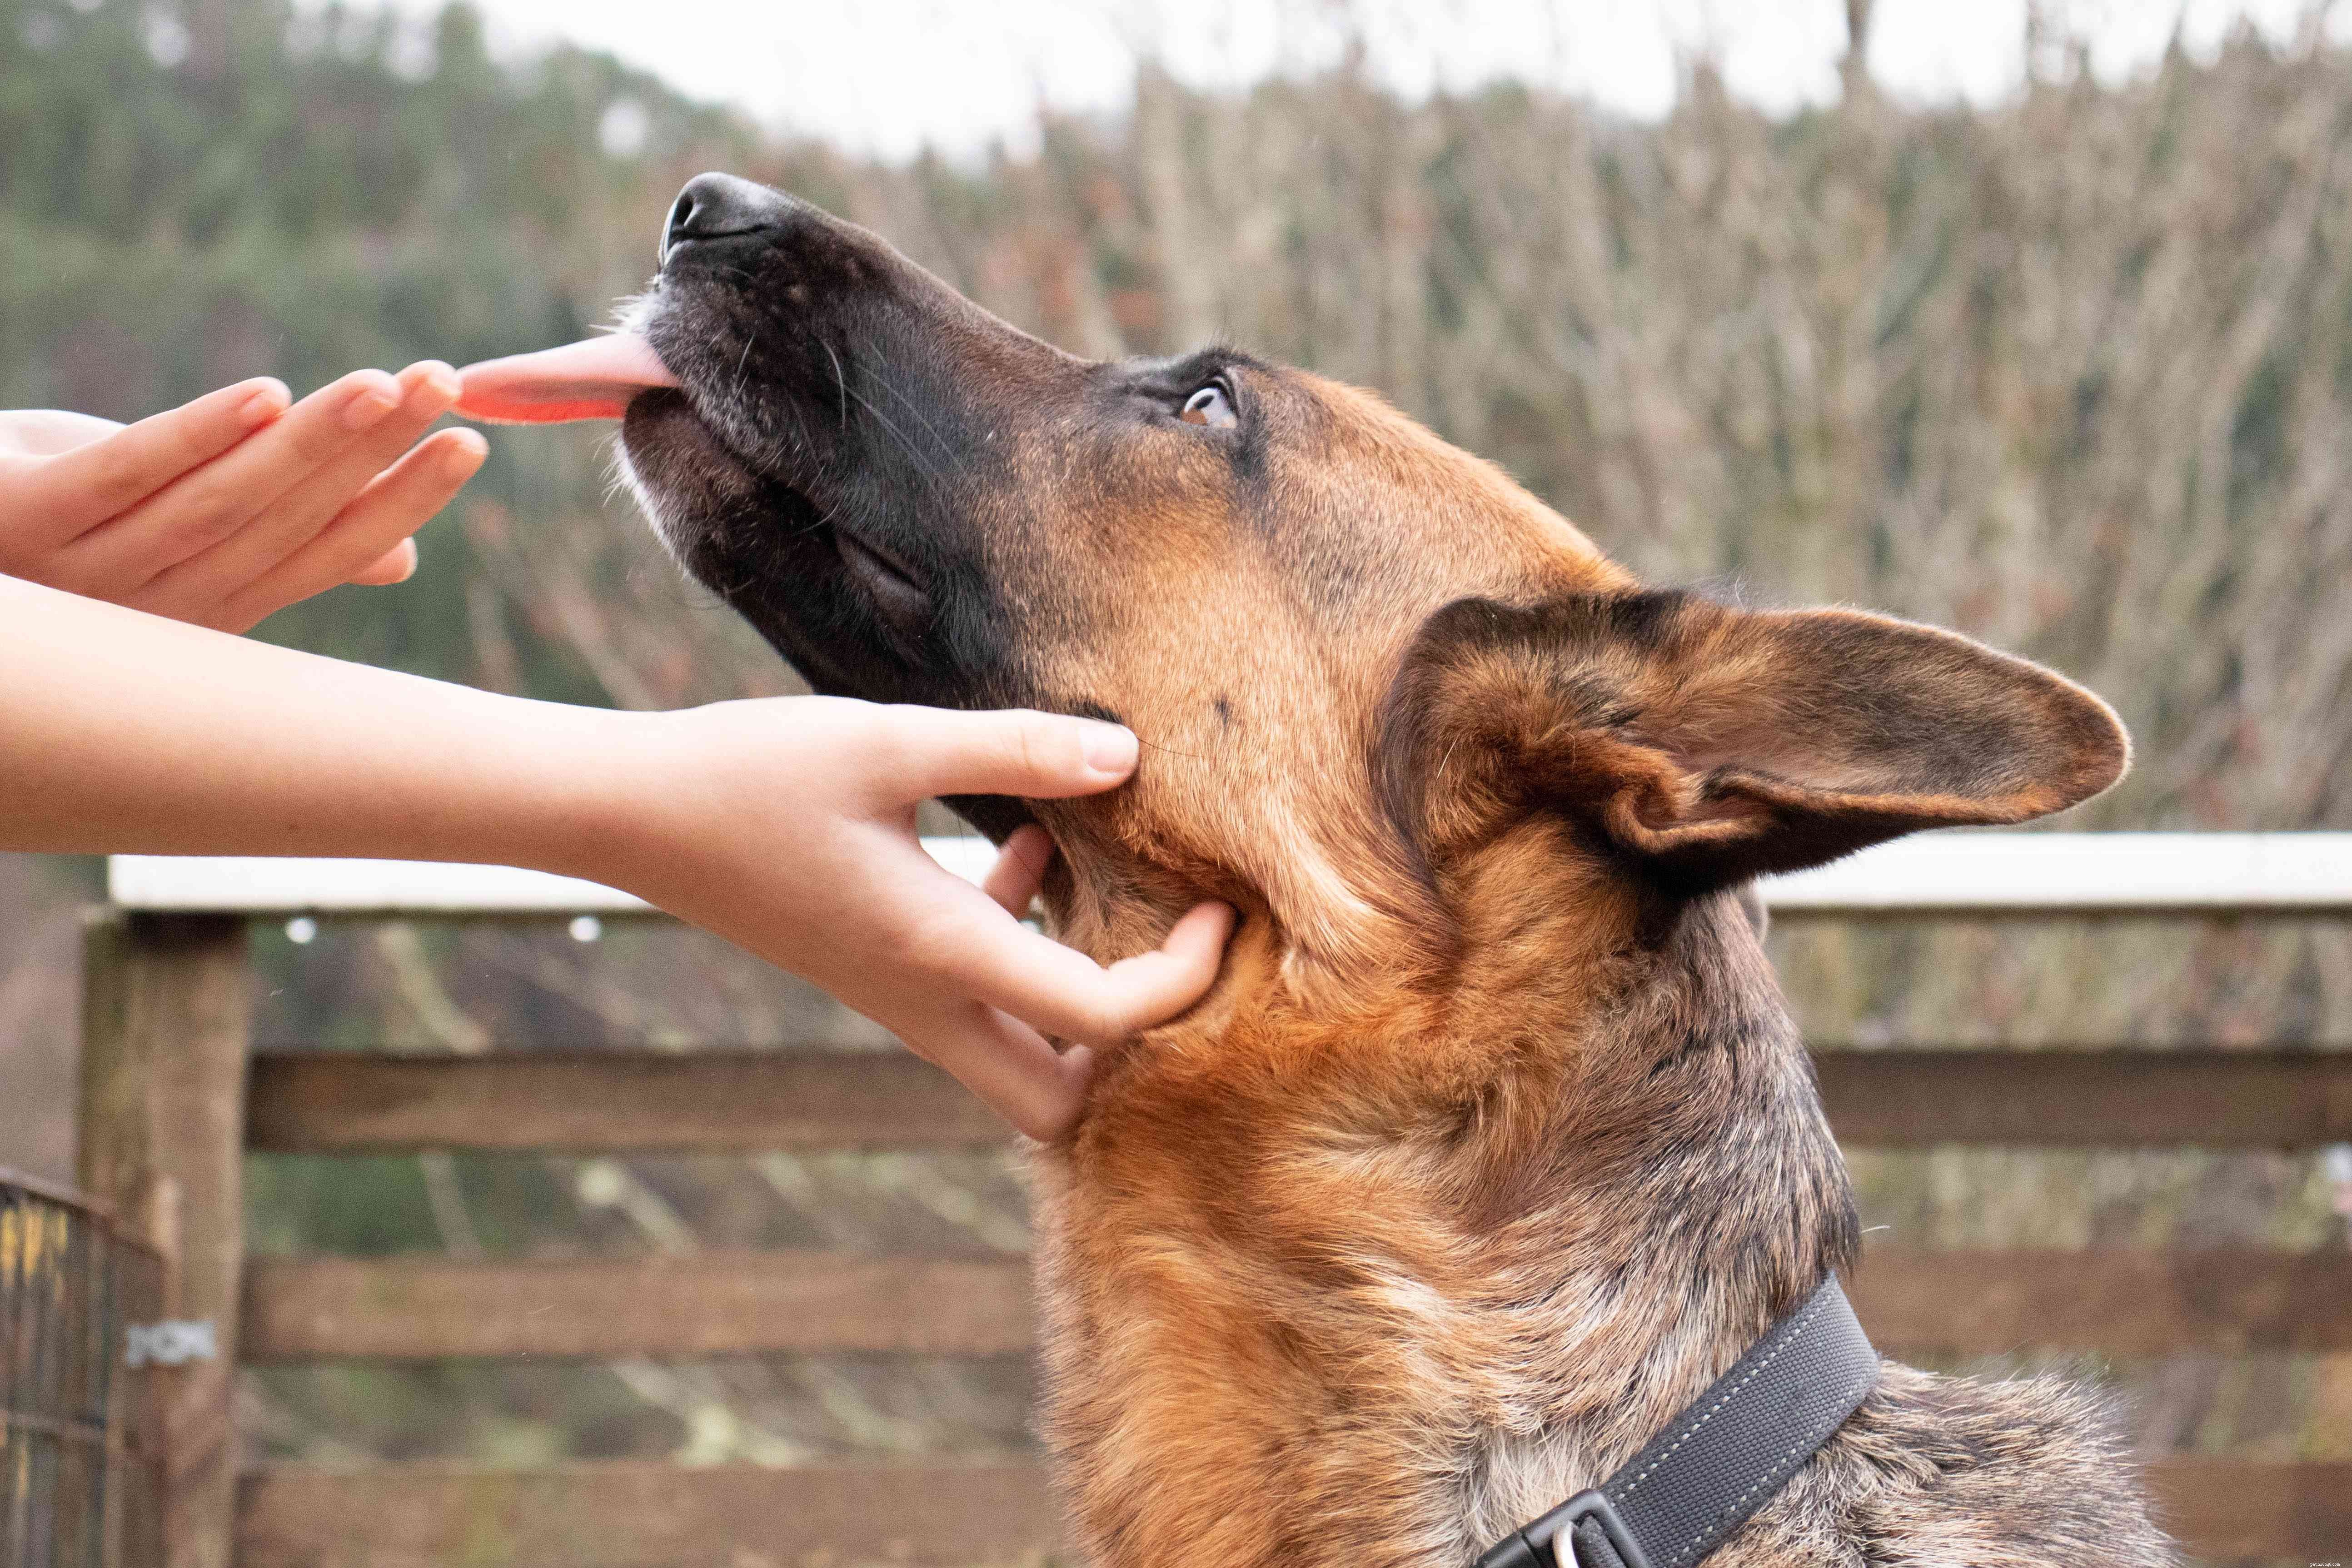 Jak přestat podlézavý nebo vzrušený močení u psů